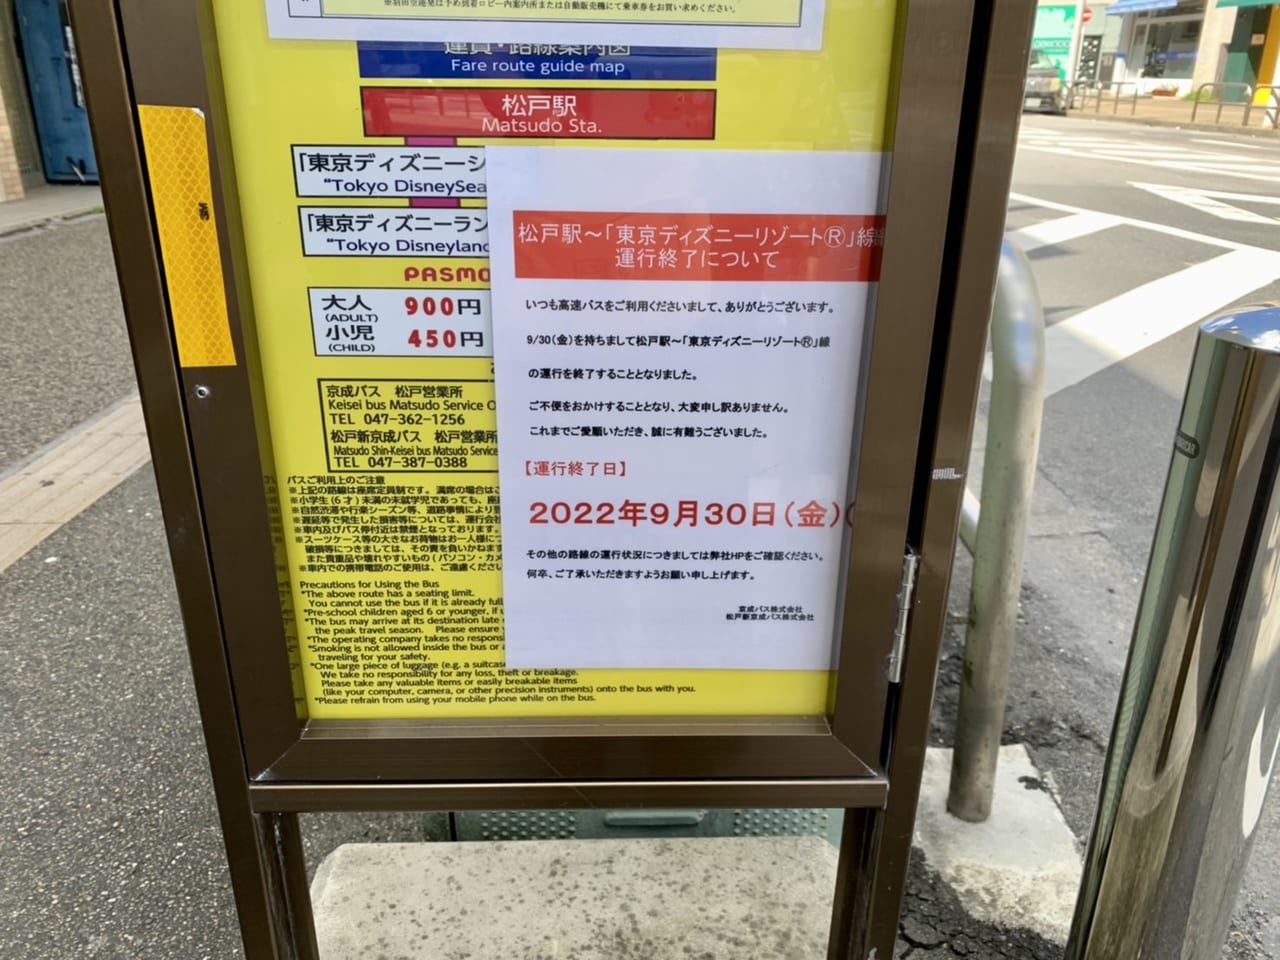 松戸市 高速バス 松戸駅 東京ディズニーリゾート 線は 9月30日 金 をもって運行終了となります 号外net 松戸市